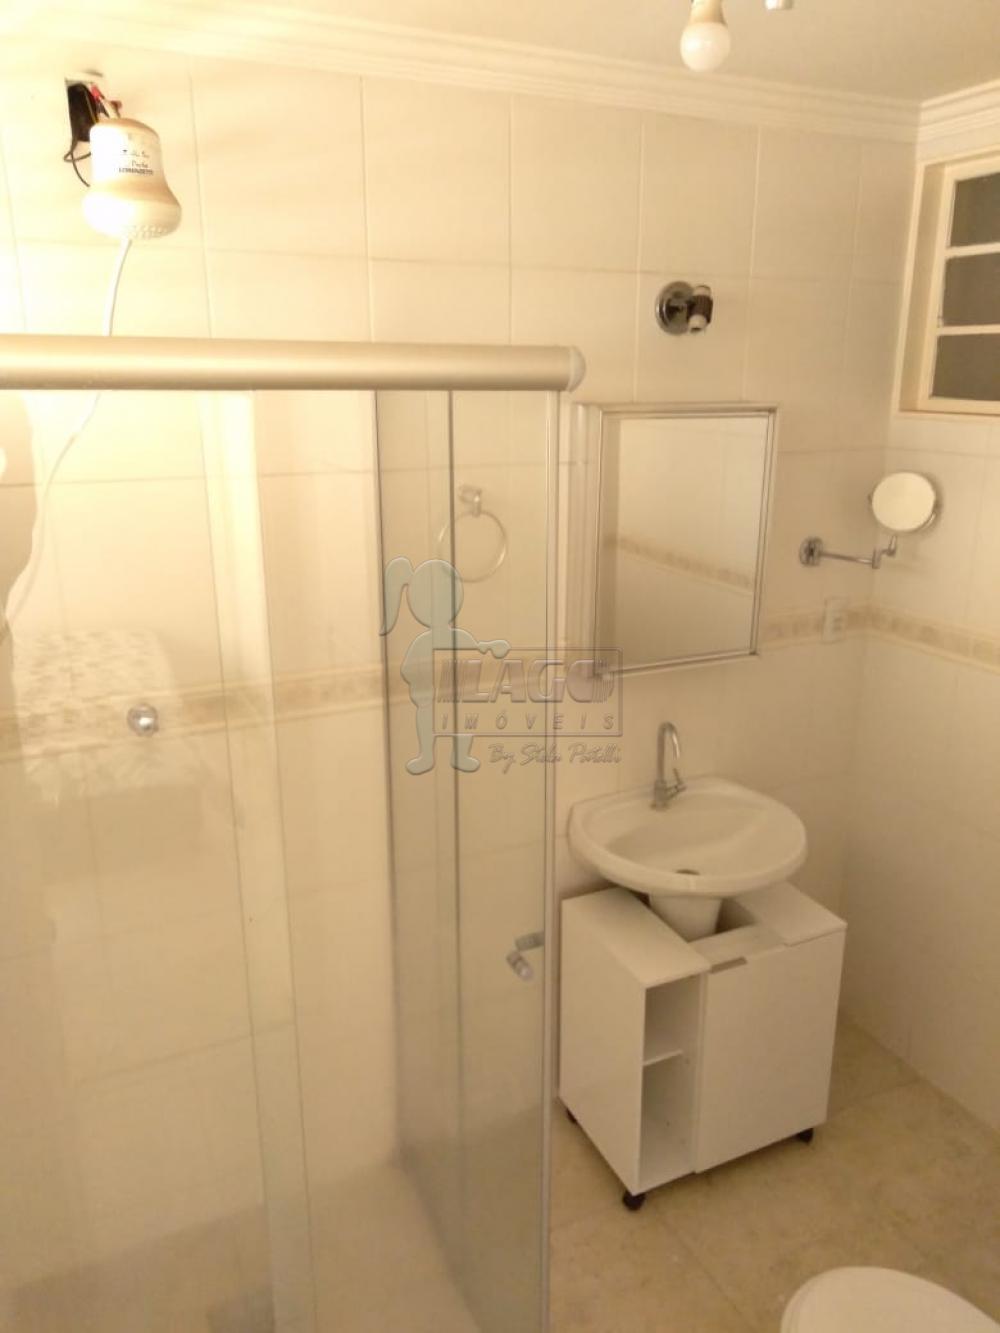 Alugar Apartamentos / Studio/Kitnet em Ribeirão Preto R$ 950,00 - Foto 6